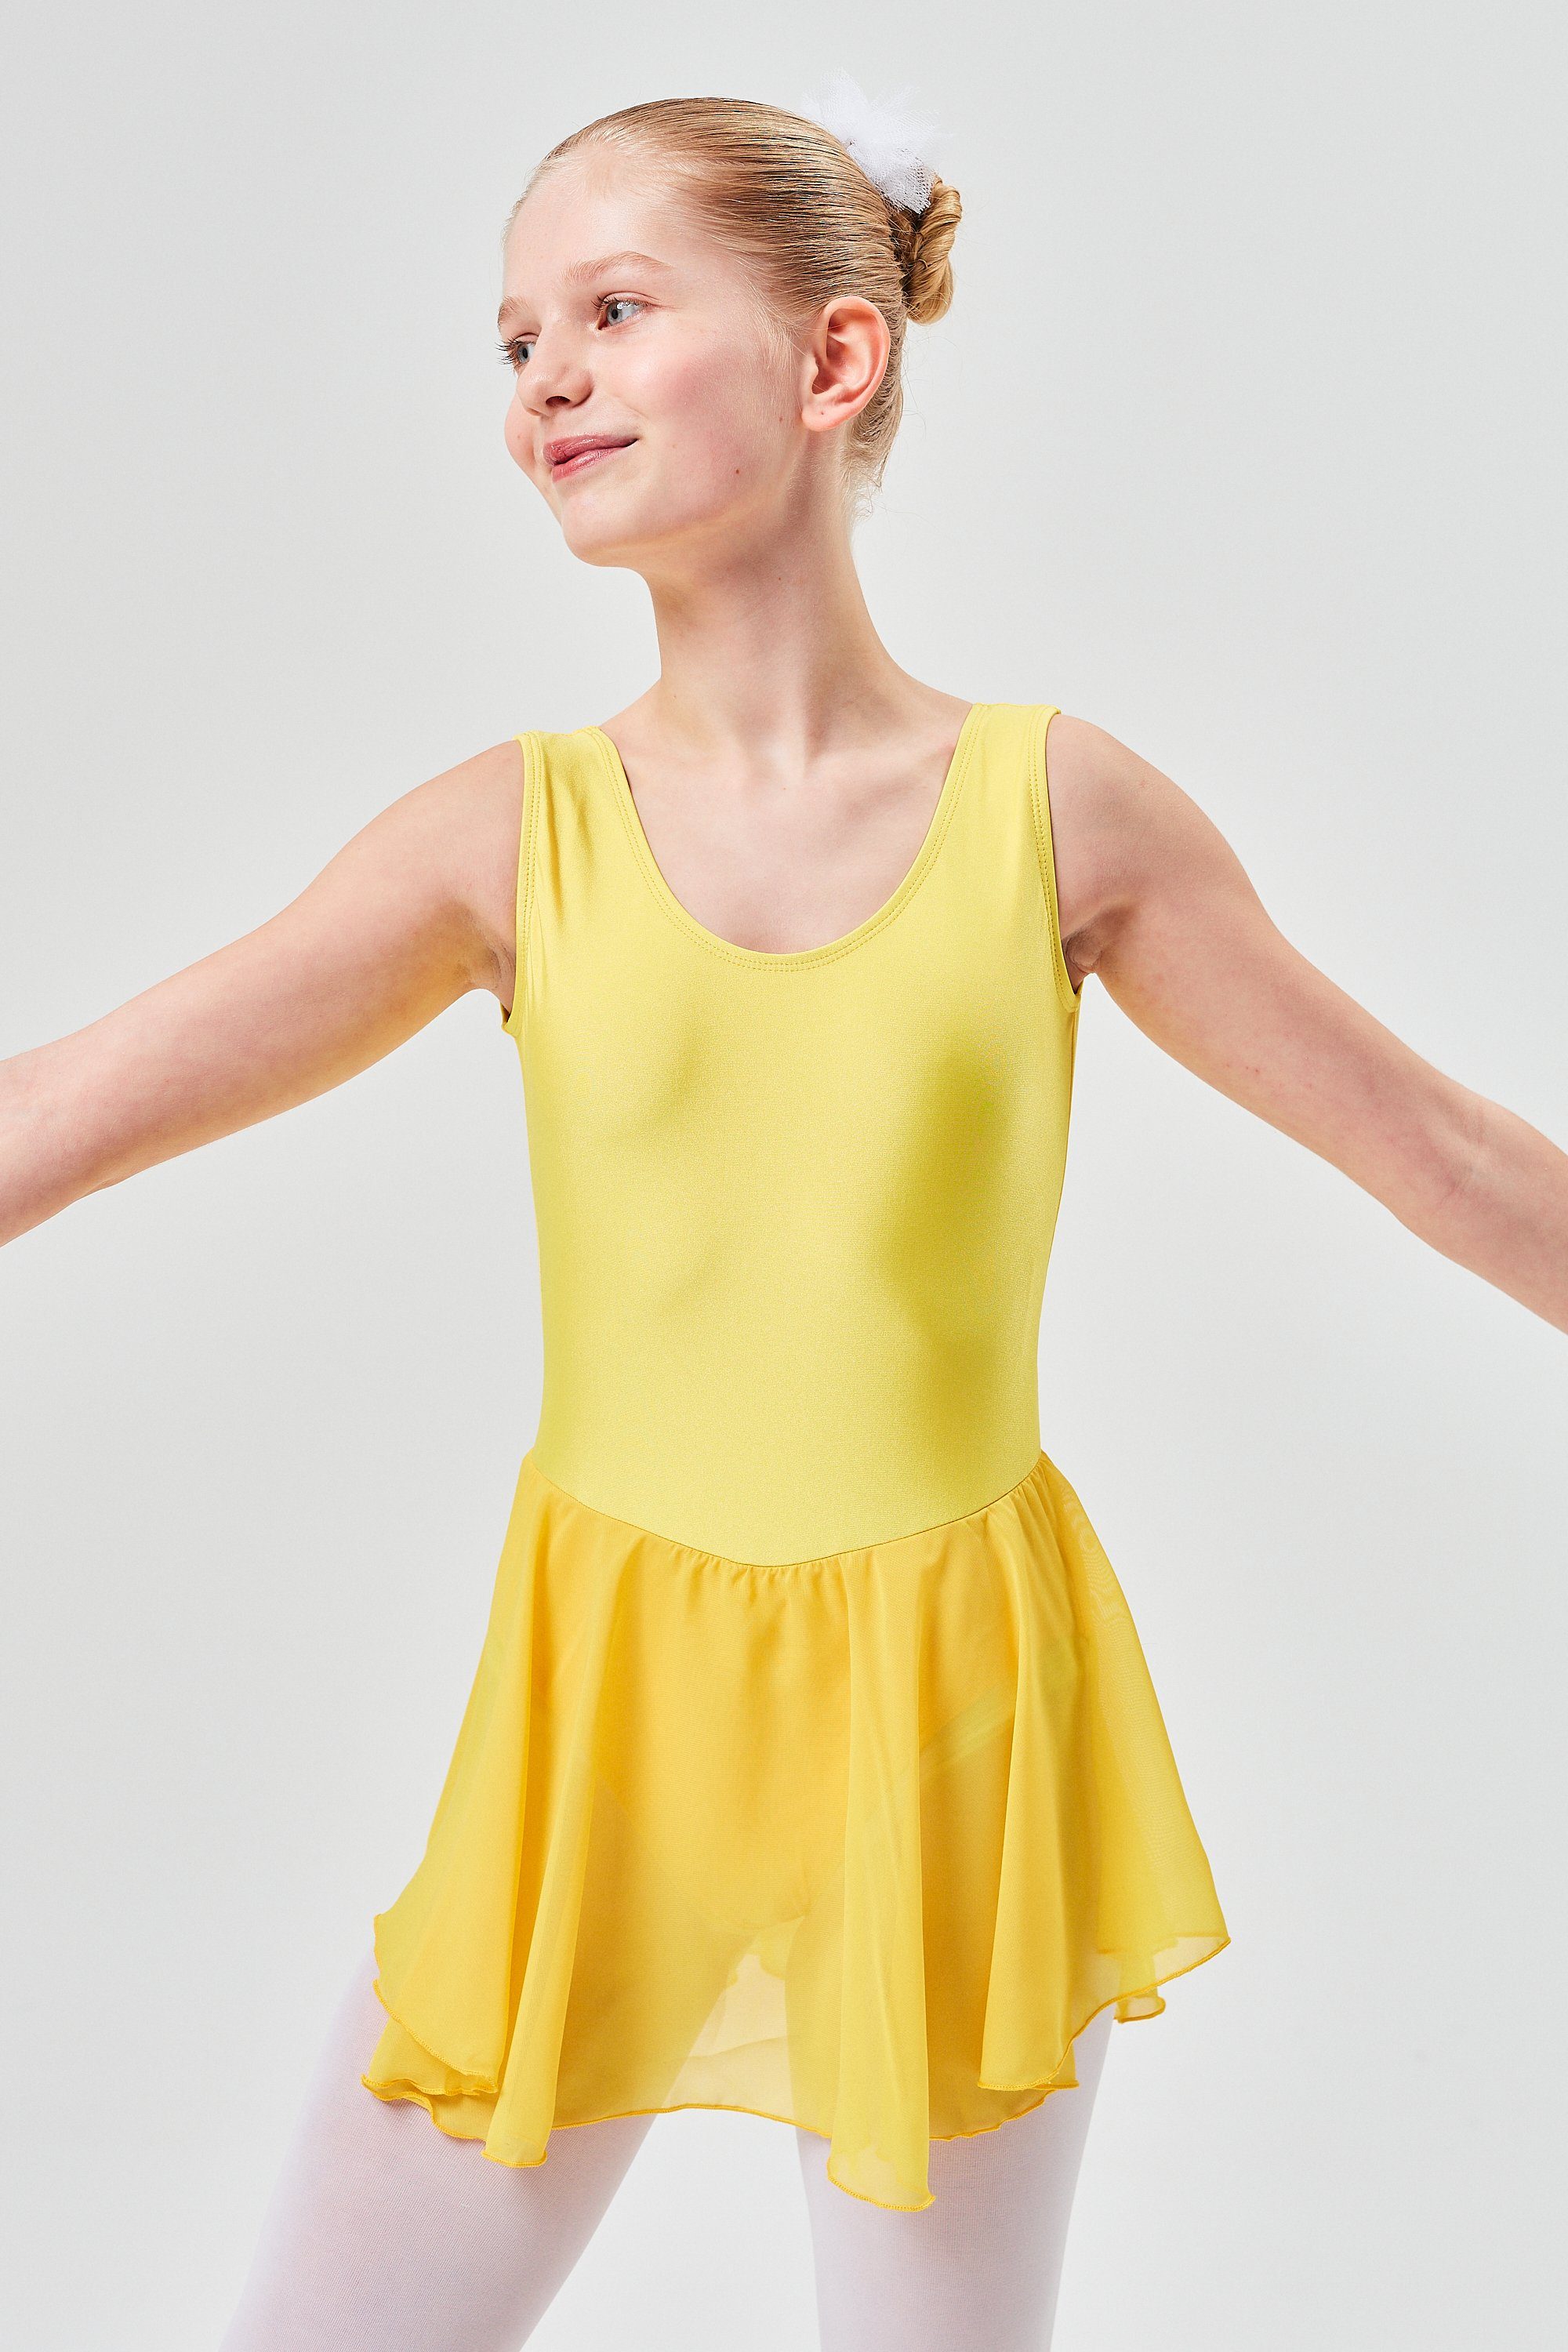 tanzmuster Chiffonkleid Ballettkleid Polly aus glänzendem Lycra Ballett Trikot für Mädchen mit Chiffonrock gelb